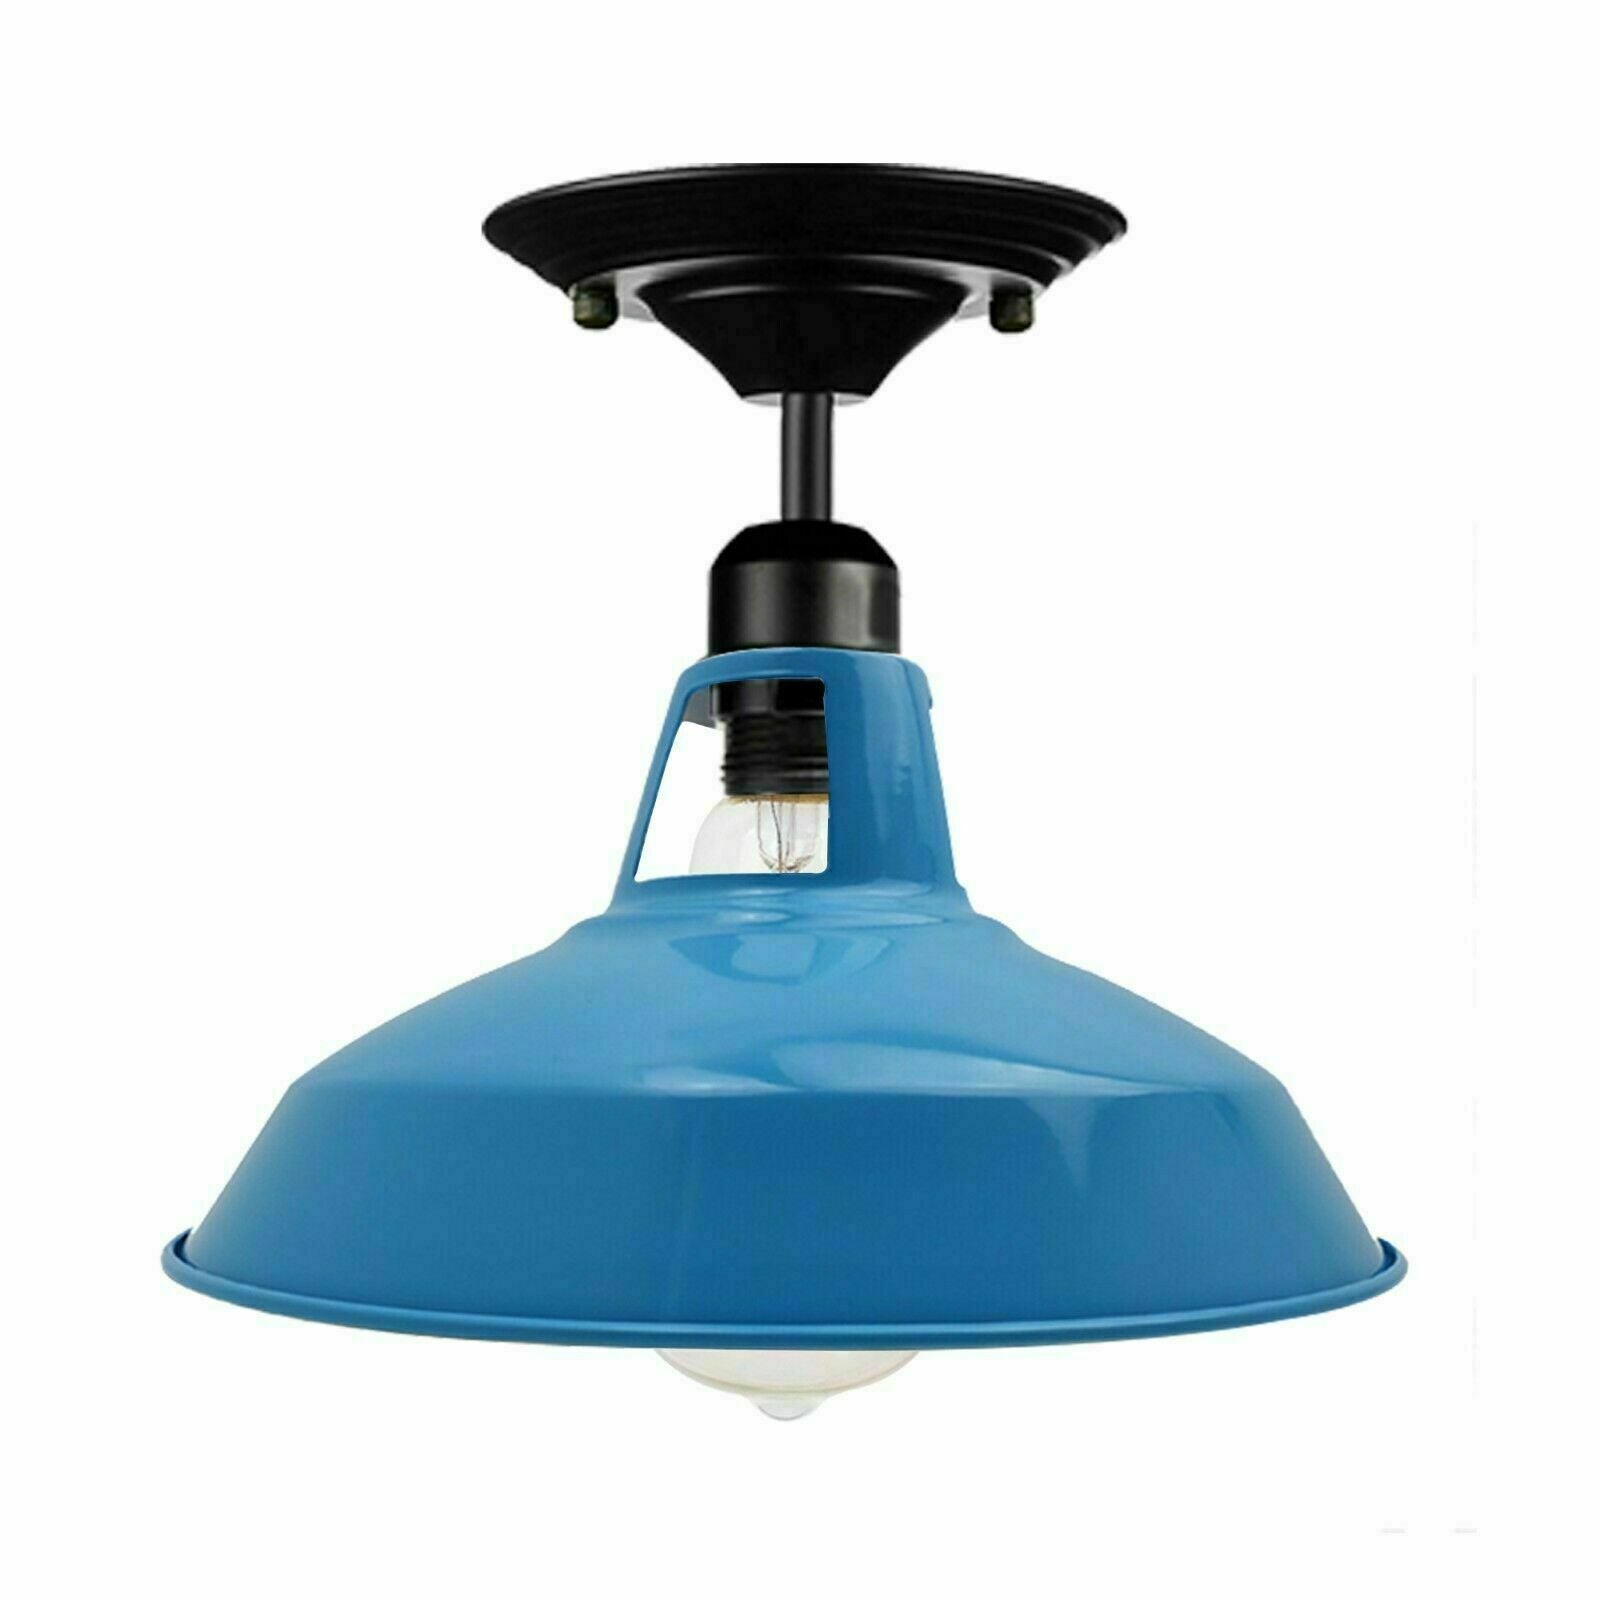 Billede af Vintage loftslampe loftslampe i industriel stil, 30 cm, metal, blå